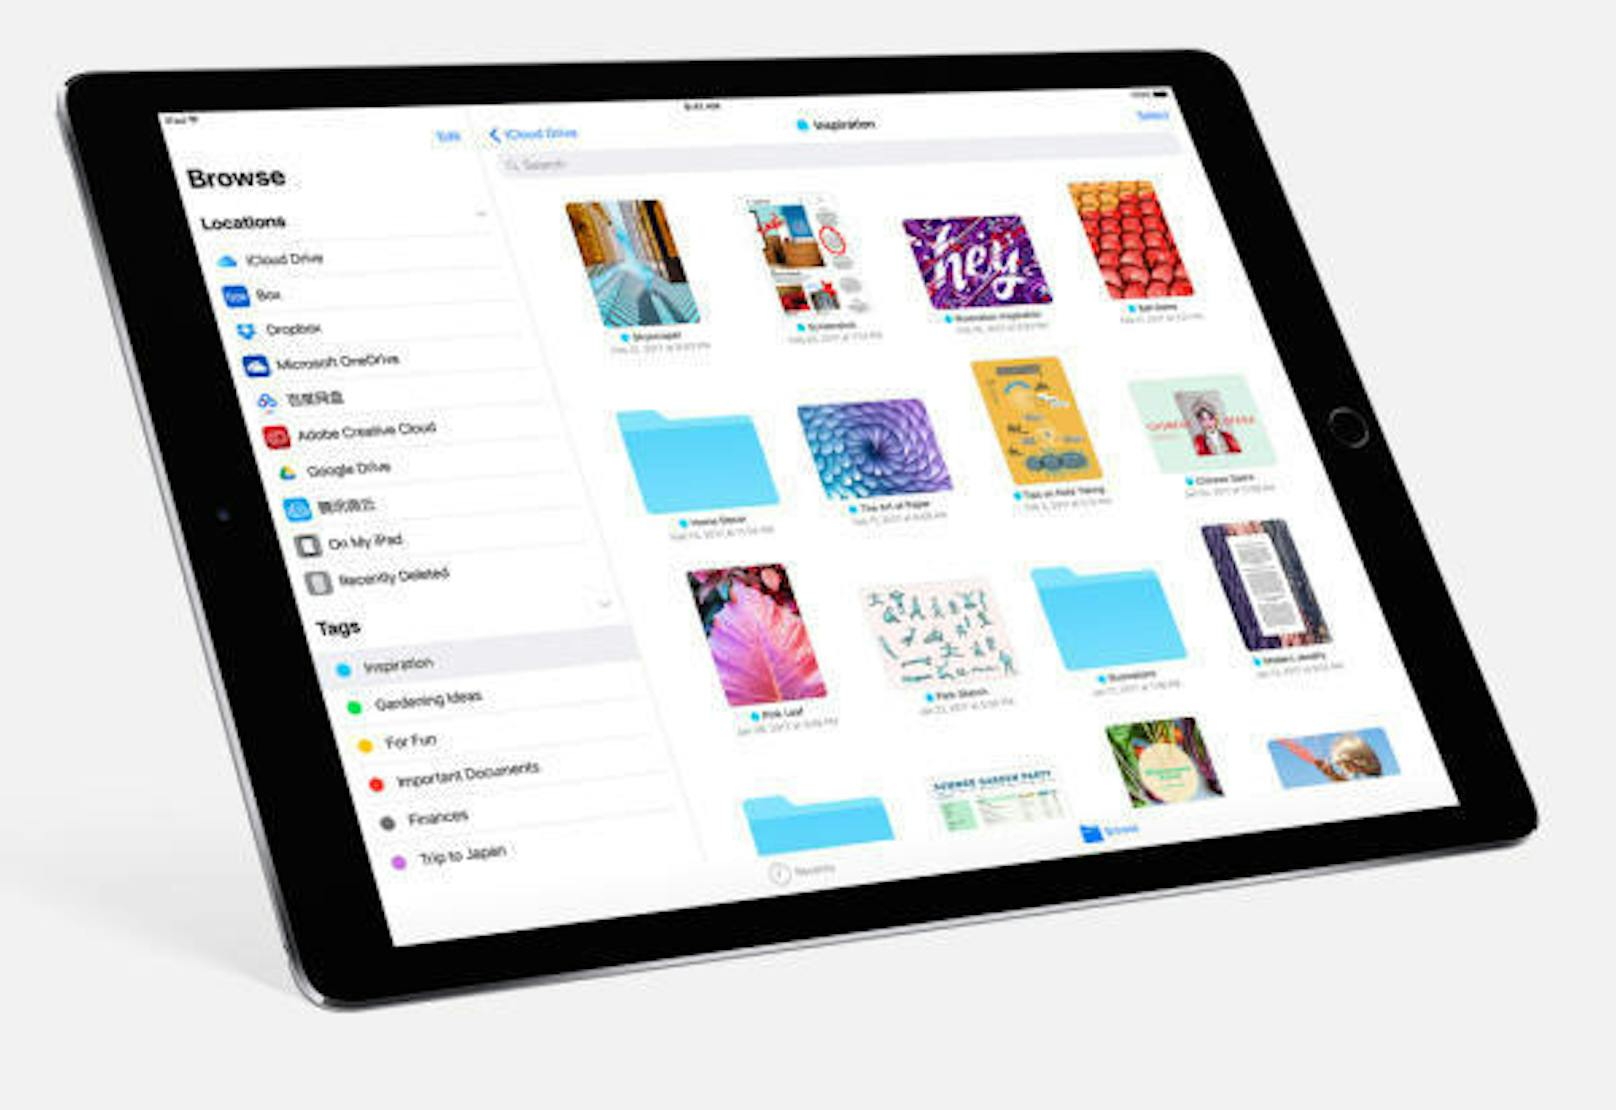 <b>Dateien:</b> Mit iOS 11 kommt eine neu App auf iPhones und iPads. Damit lassen sich Dateien Geräte-übergreifend organisieren. So kann man beispielsweise auf dem iPad ein Wordfile öffnen und dann auf dem iPhone weiterbearbeiten, sofern es in der iCloud abgelegt wird.